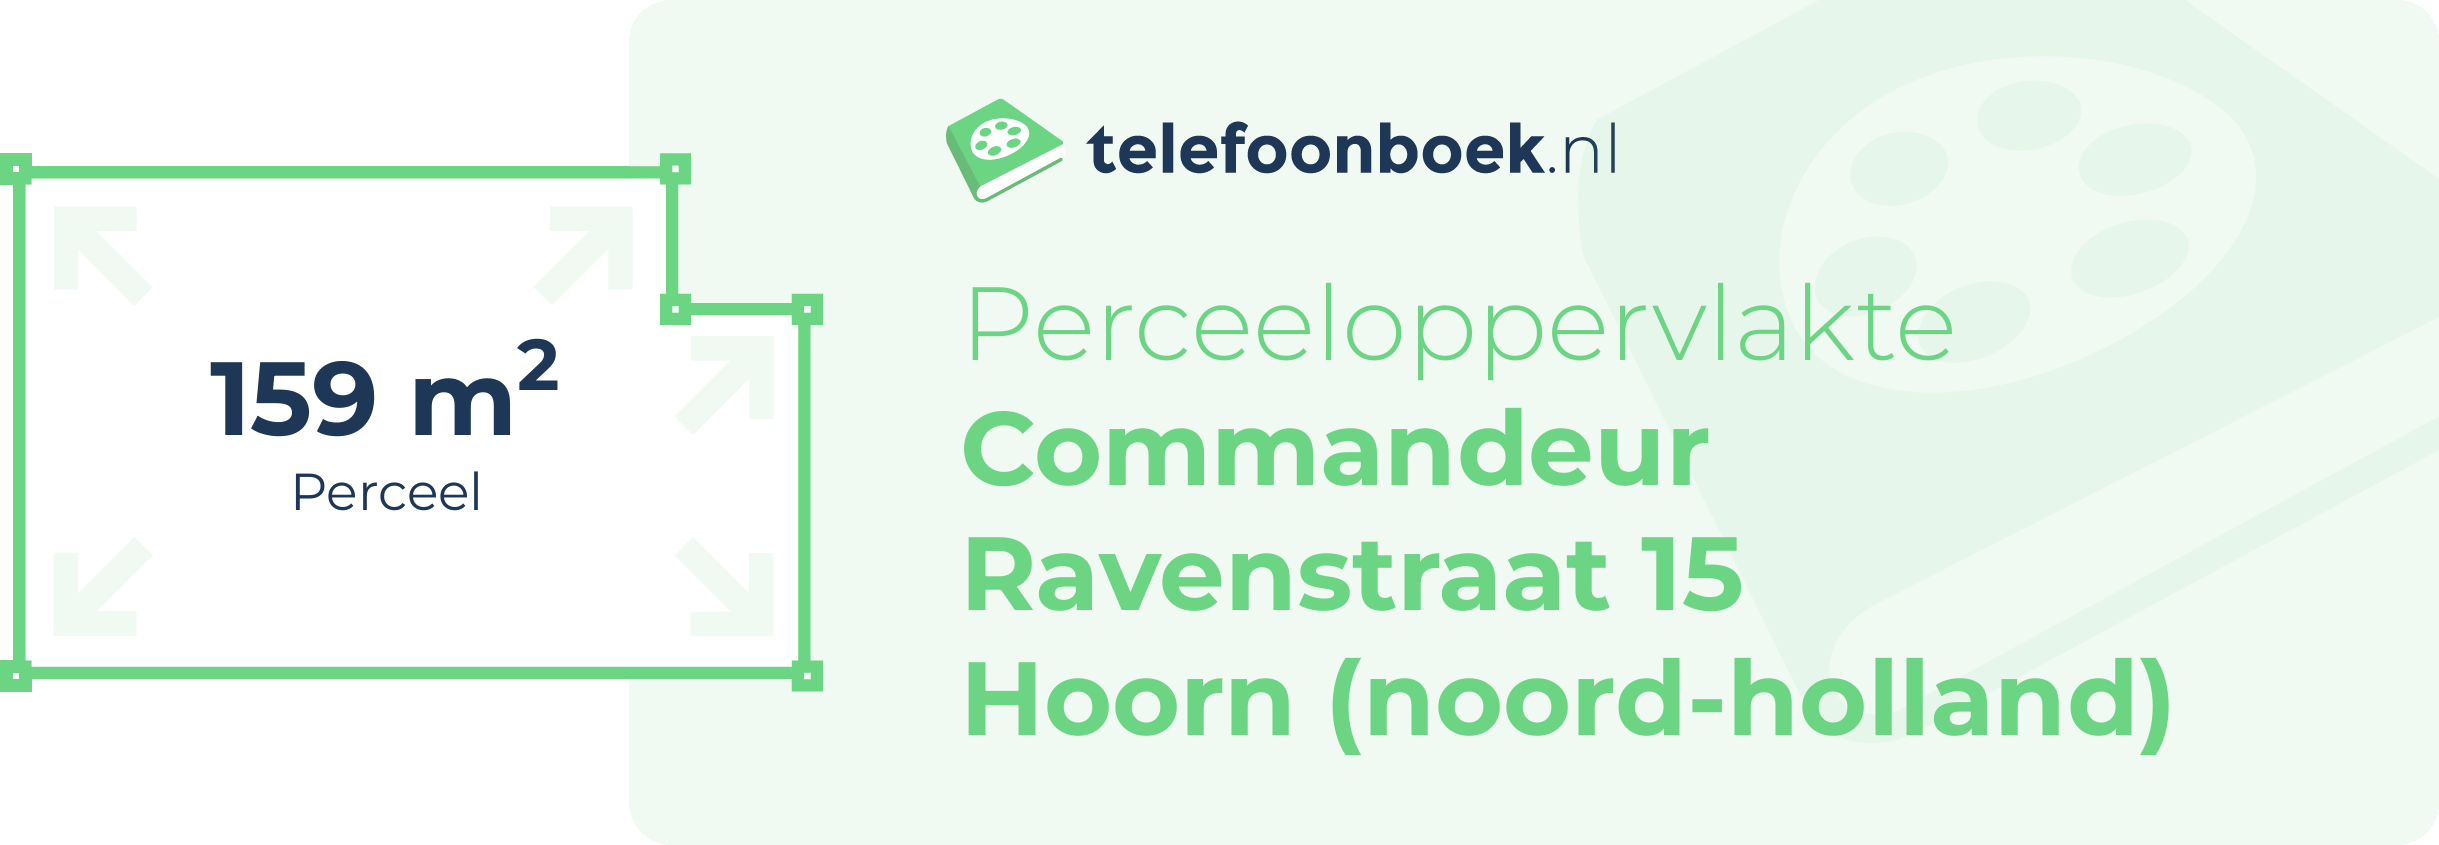 Perceeloppervlakte Commandeur Ravenstraat 15 Hoorn (Noord-Holland)